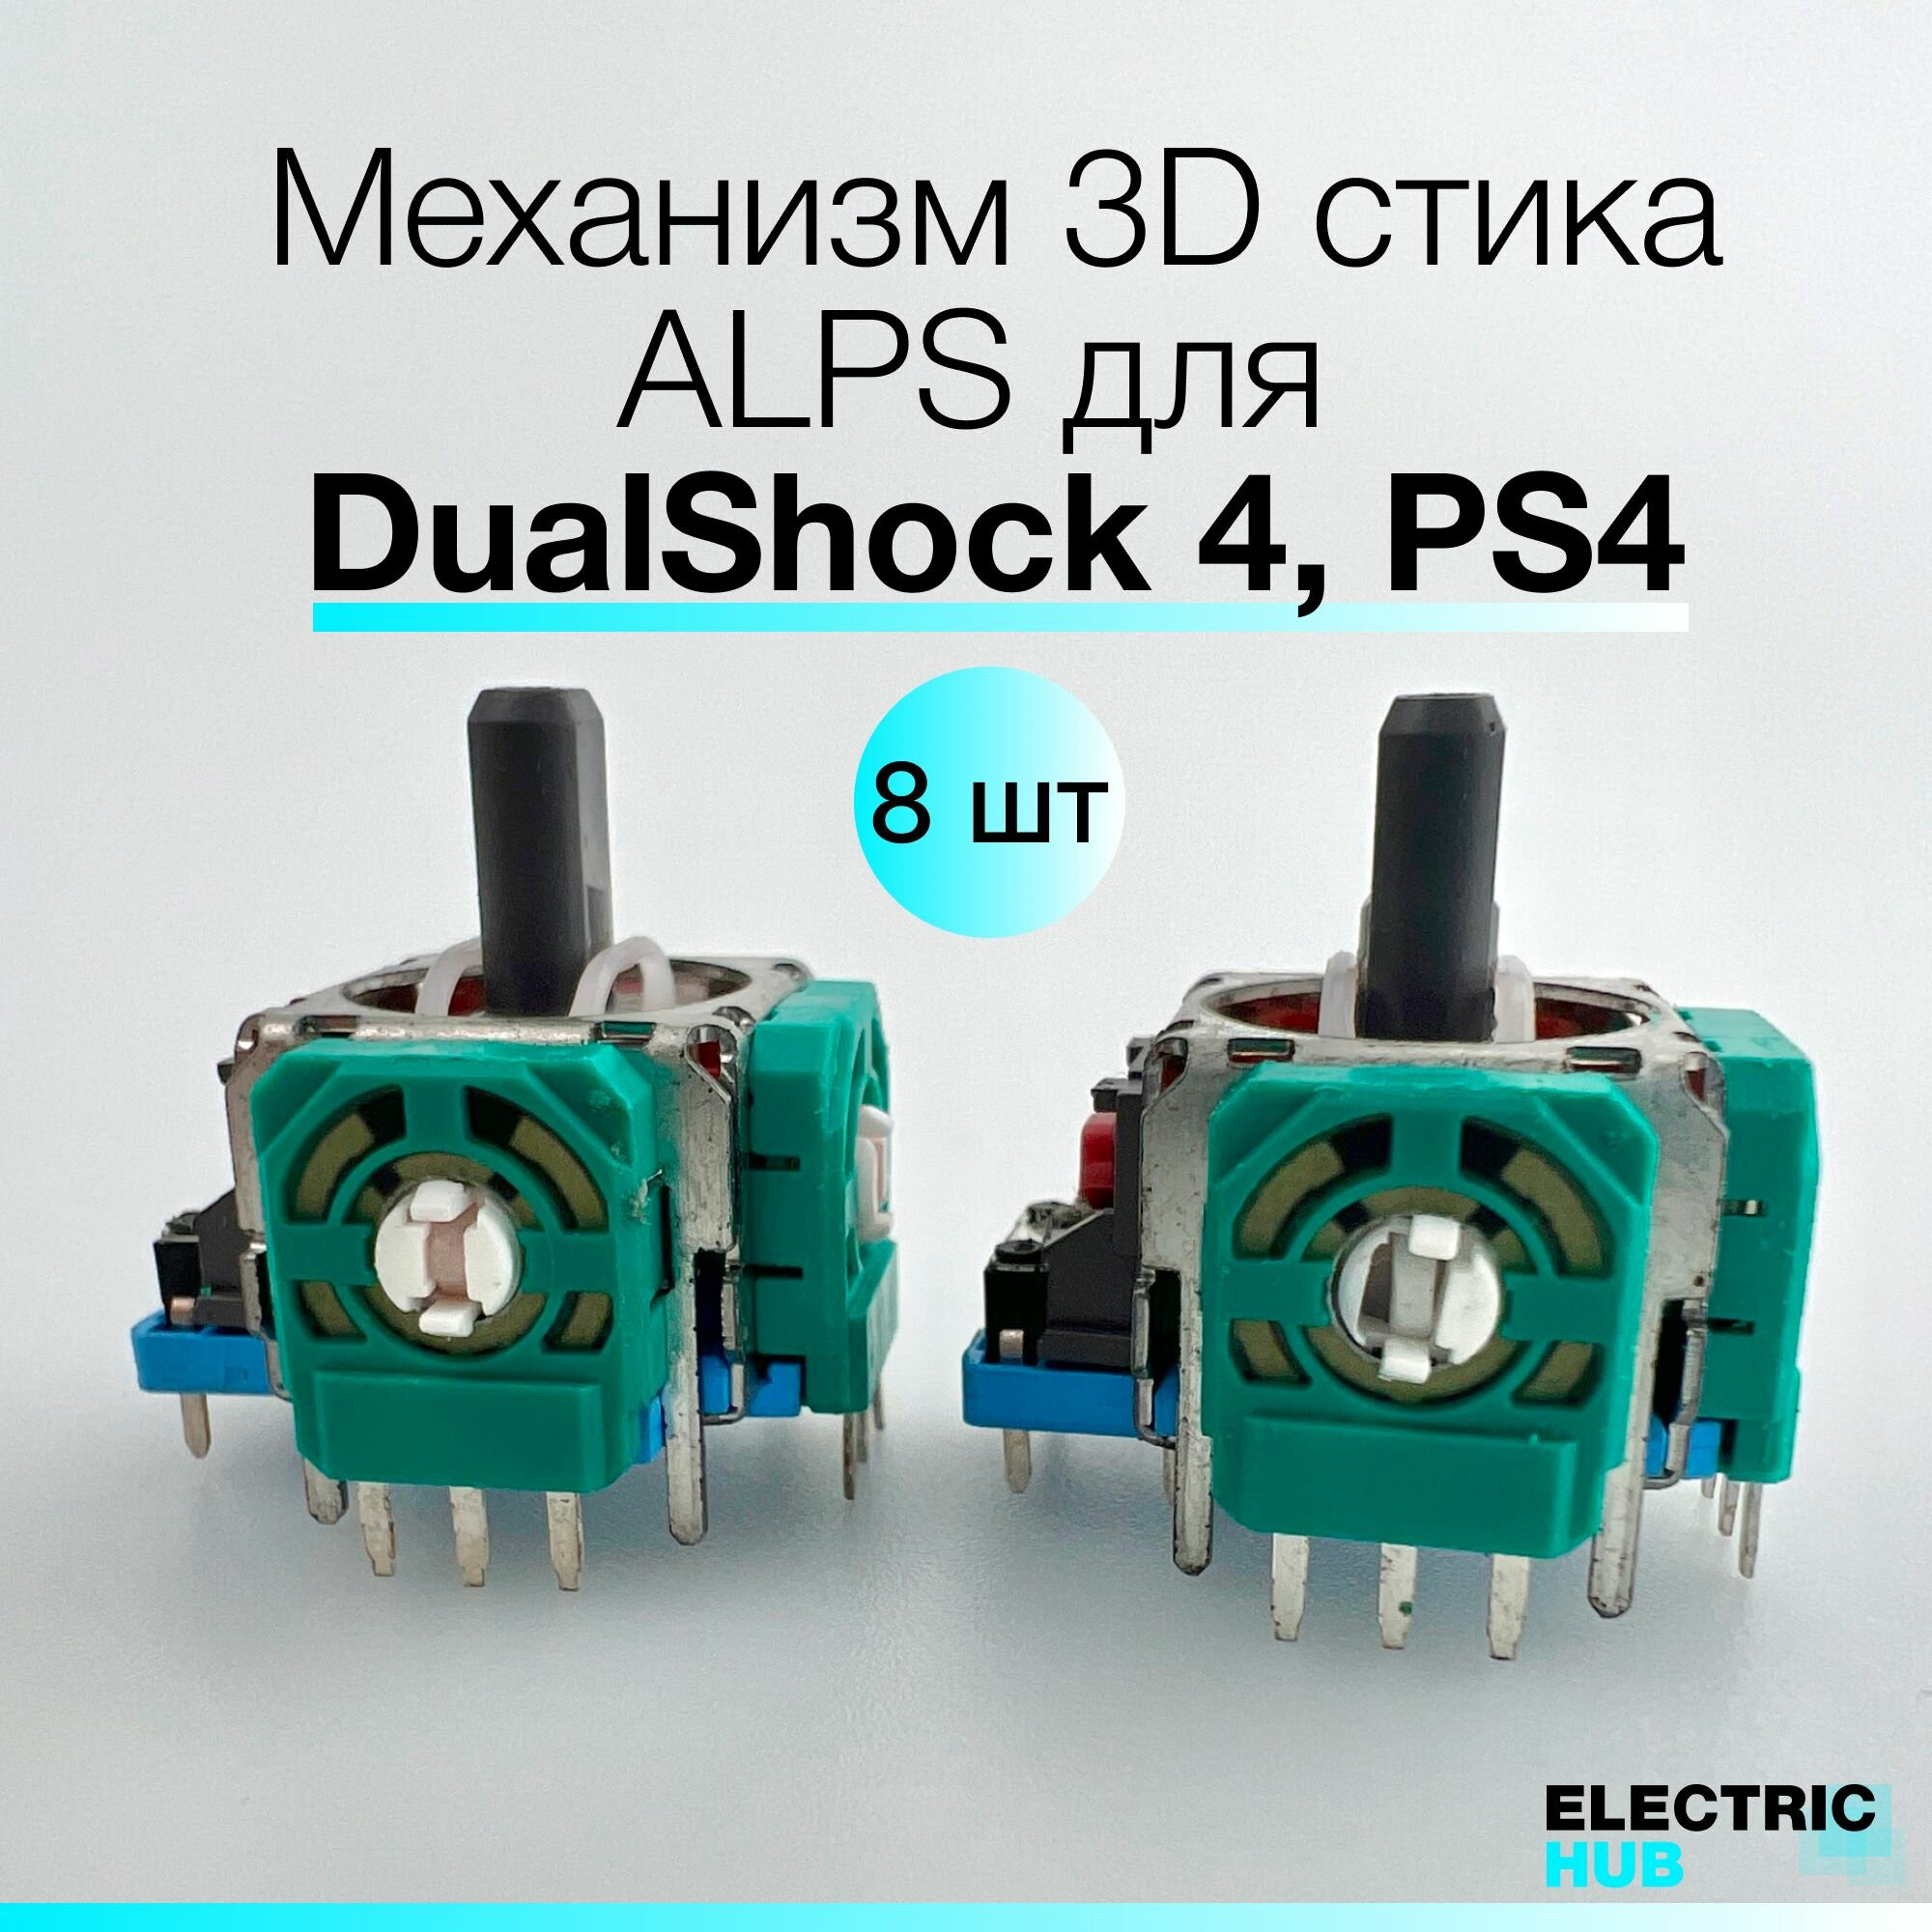 Оригинальный механизм 3D стика ALPS для DualShock 4, PS4, для ремонта джойстика/геймпада, 8 шт.